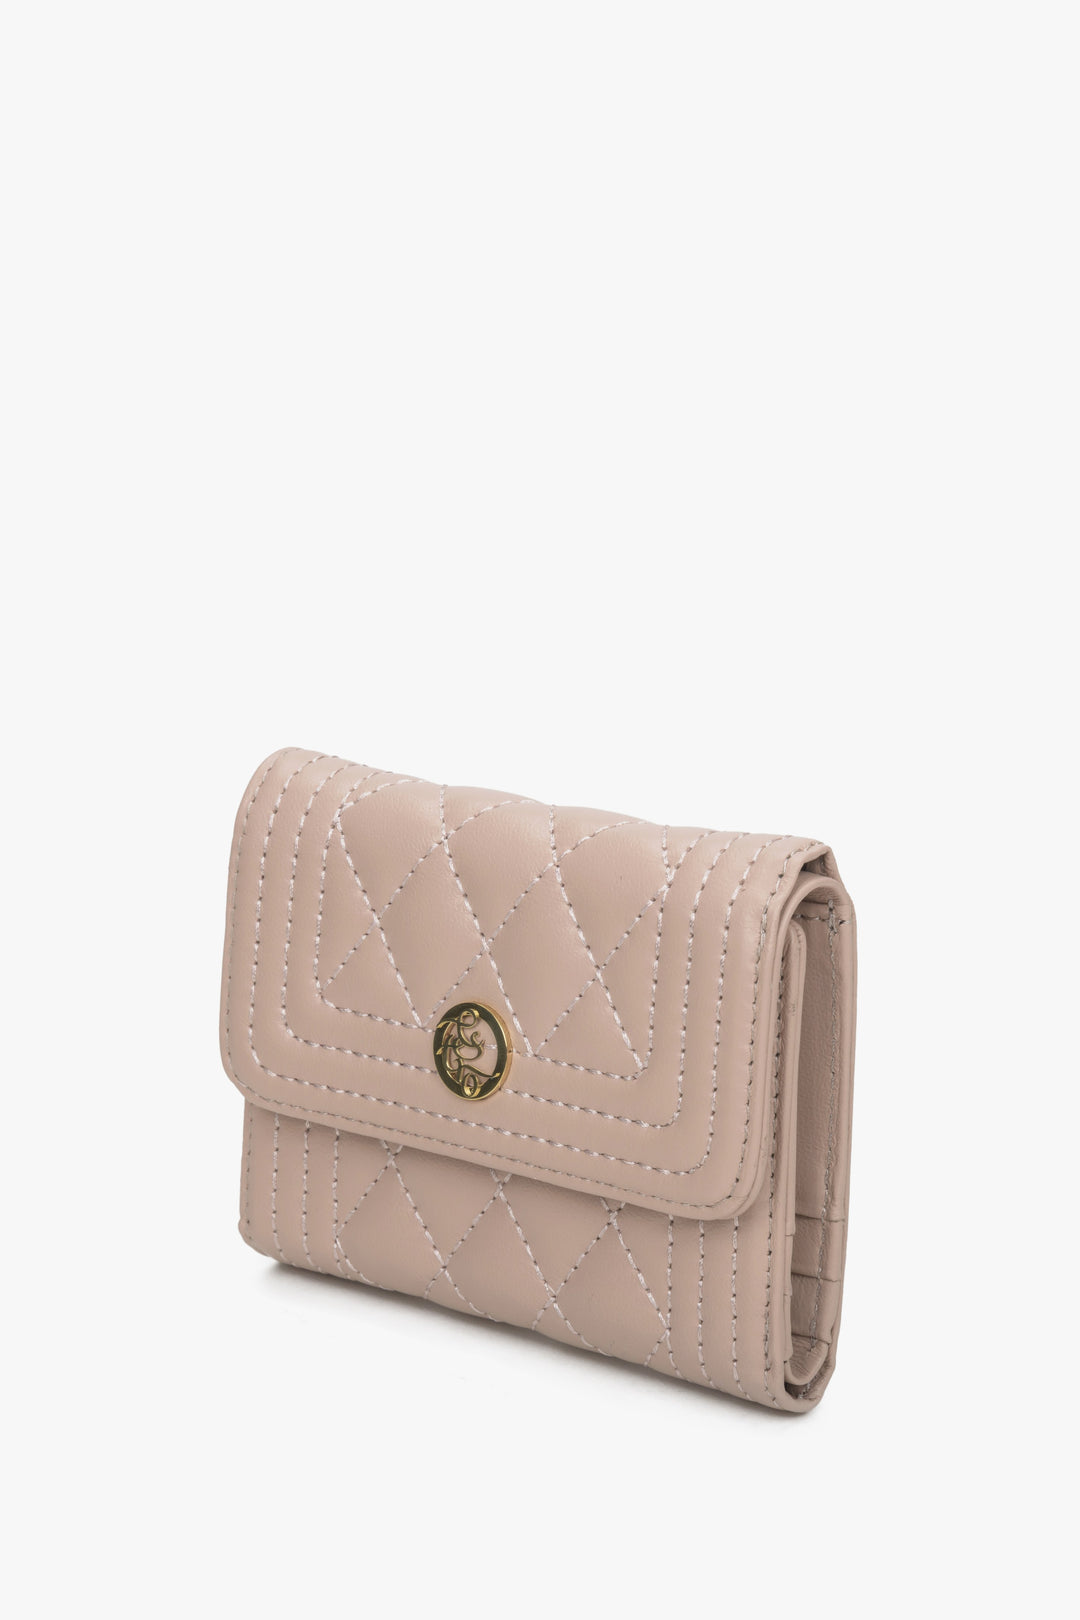 Women's light pink Estro wallet.